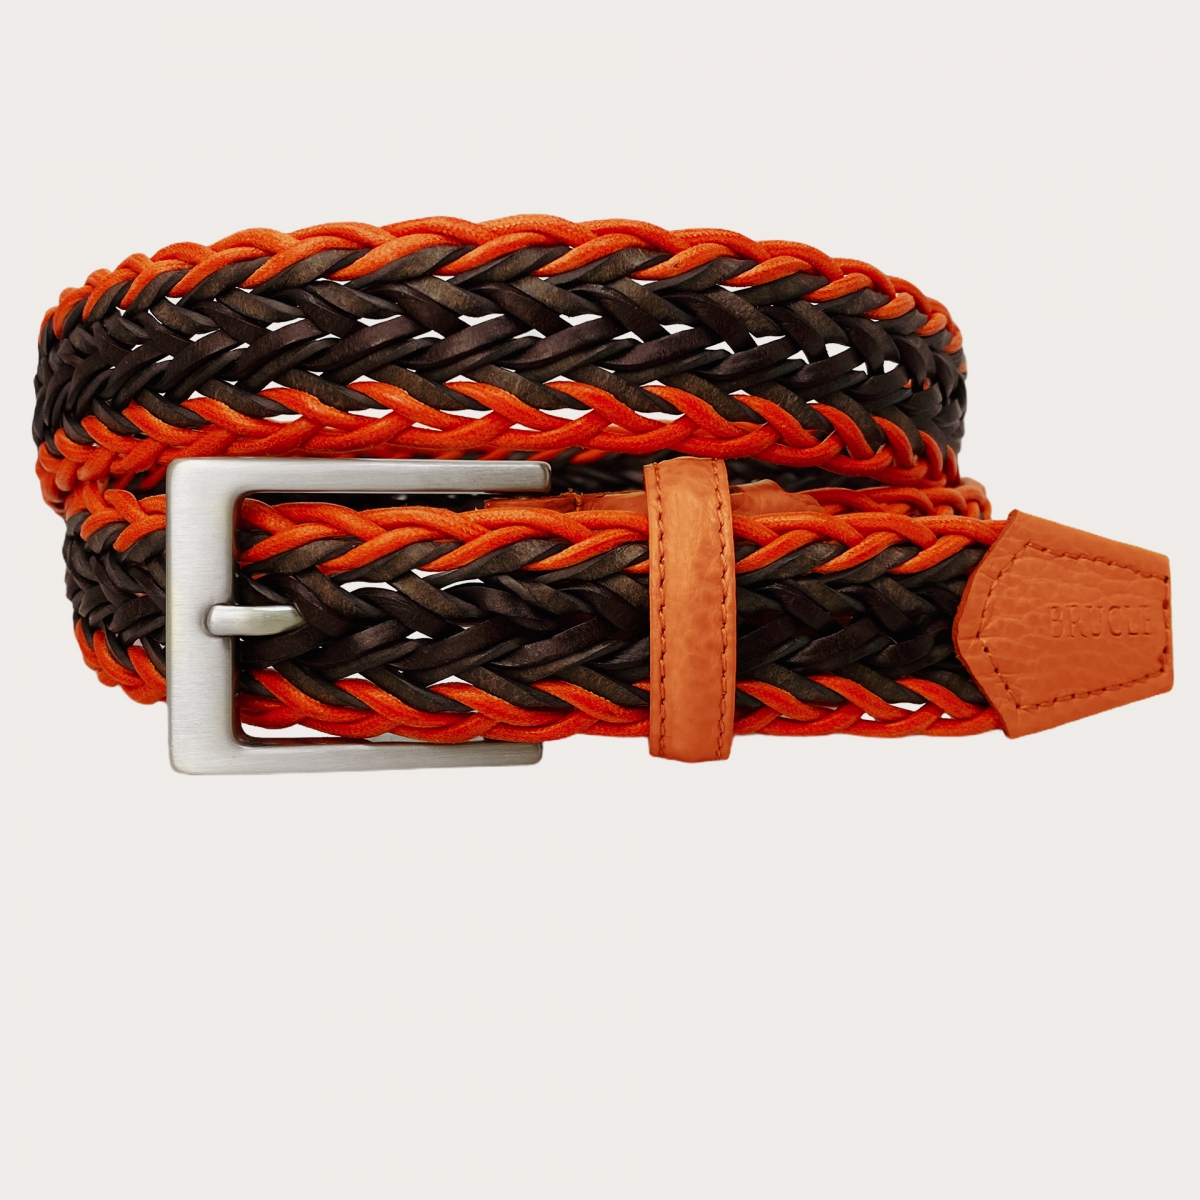 Cinturón trenzado marrón y naranja de cuerda y algodón